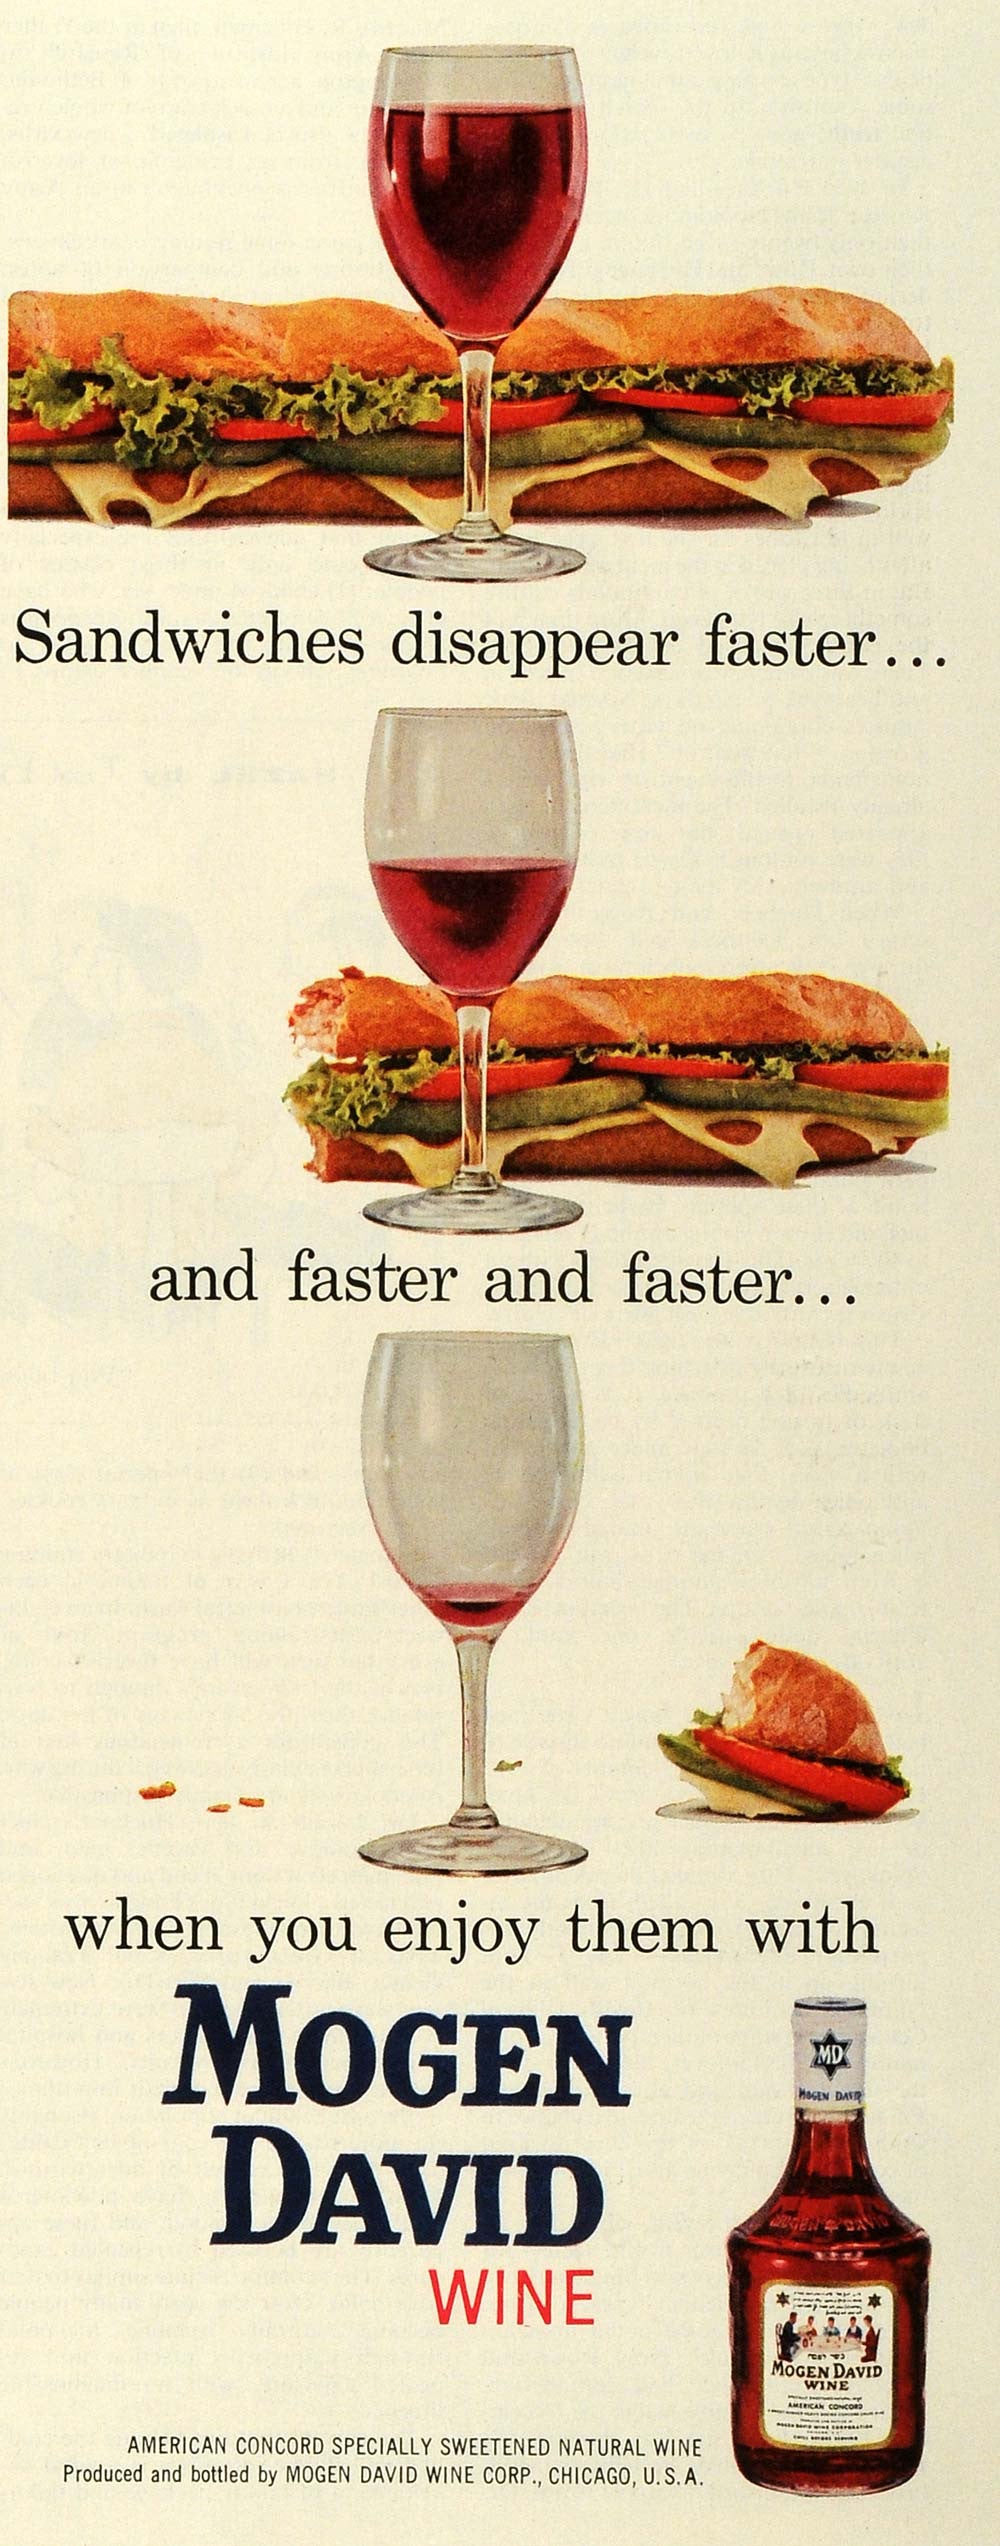 1959 Ad Mogen David Wine Sub Sandwich Concord Grapes Alcoholic Beverage SEP5